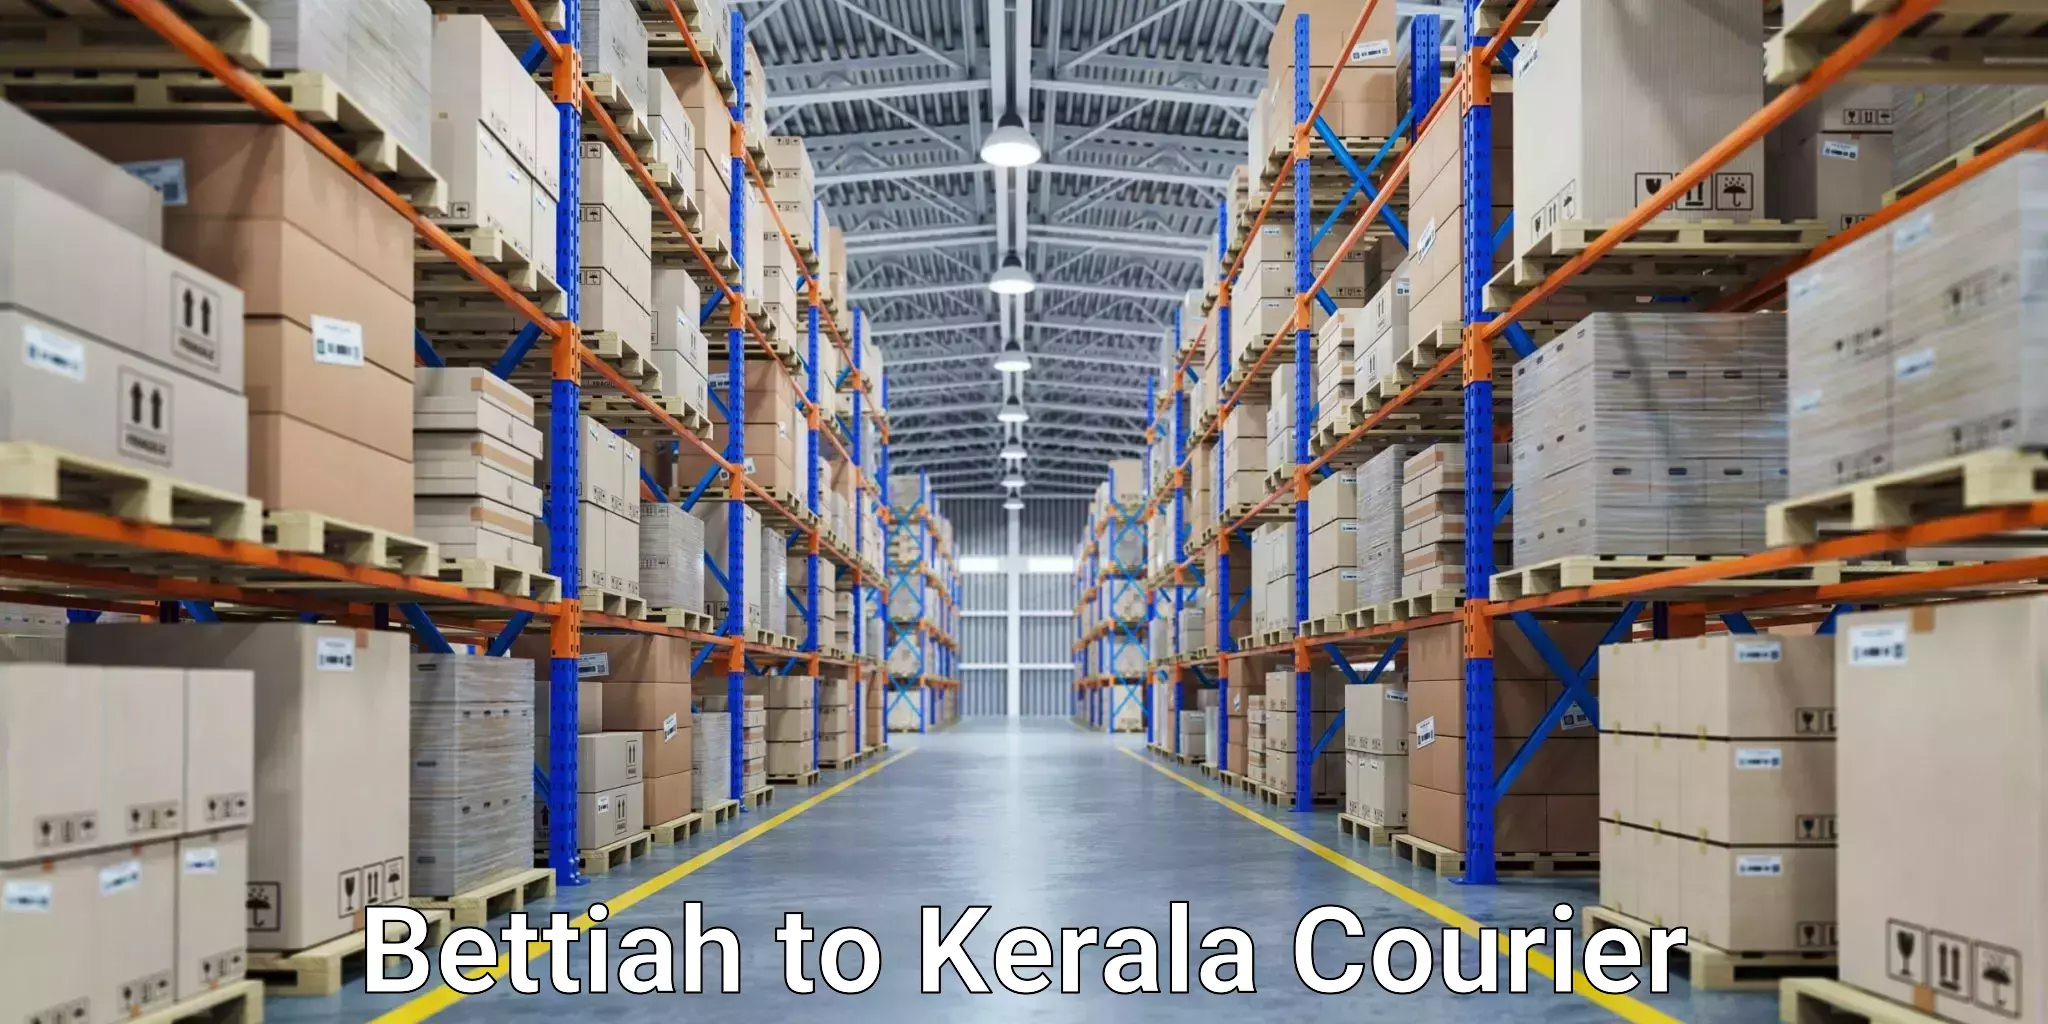 24/7 courier service Bettiah to Kerala